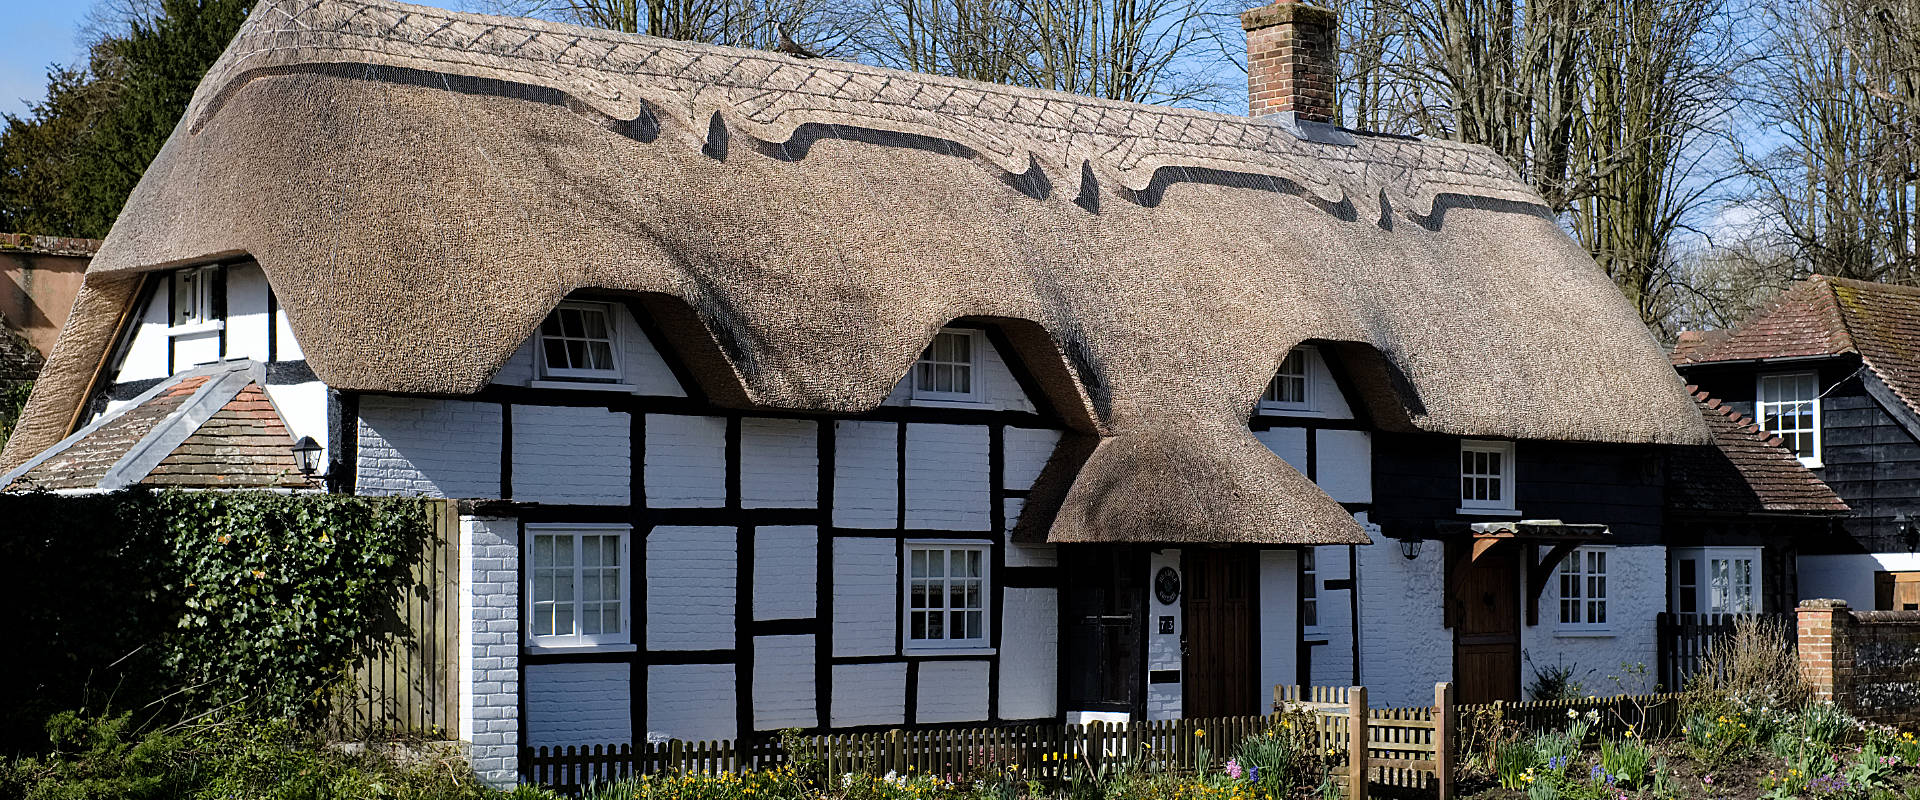 Typisches Cottages in der Grafschaft Hampshire, Südengland